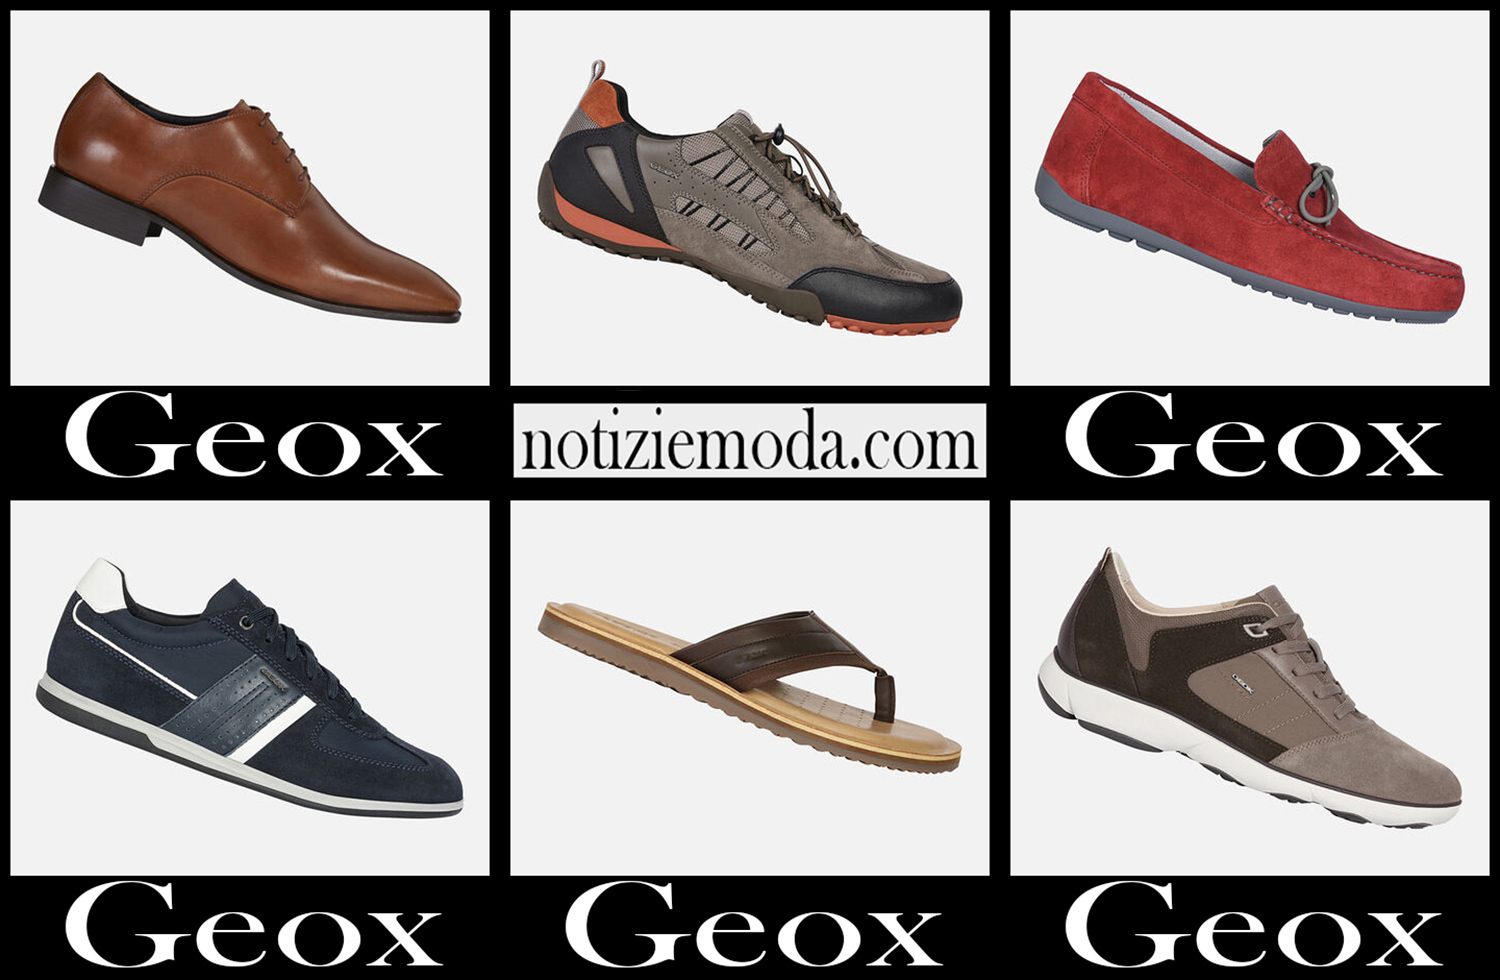 Nuovi arrivi scarpe Geox 2021 calzature moda uomo